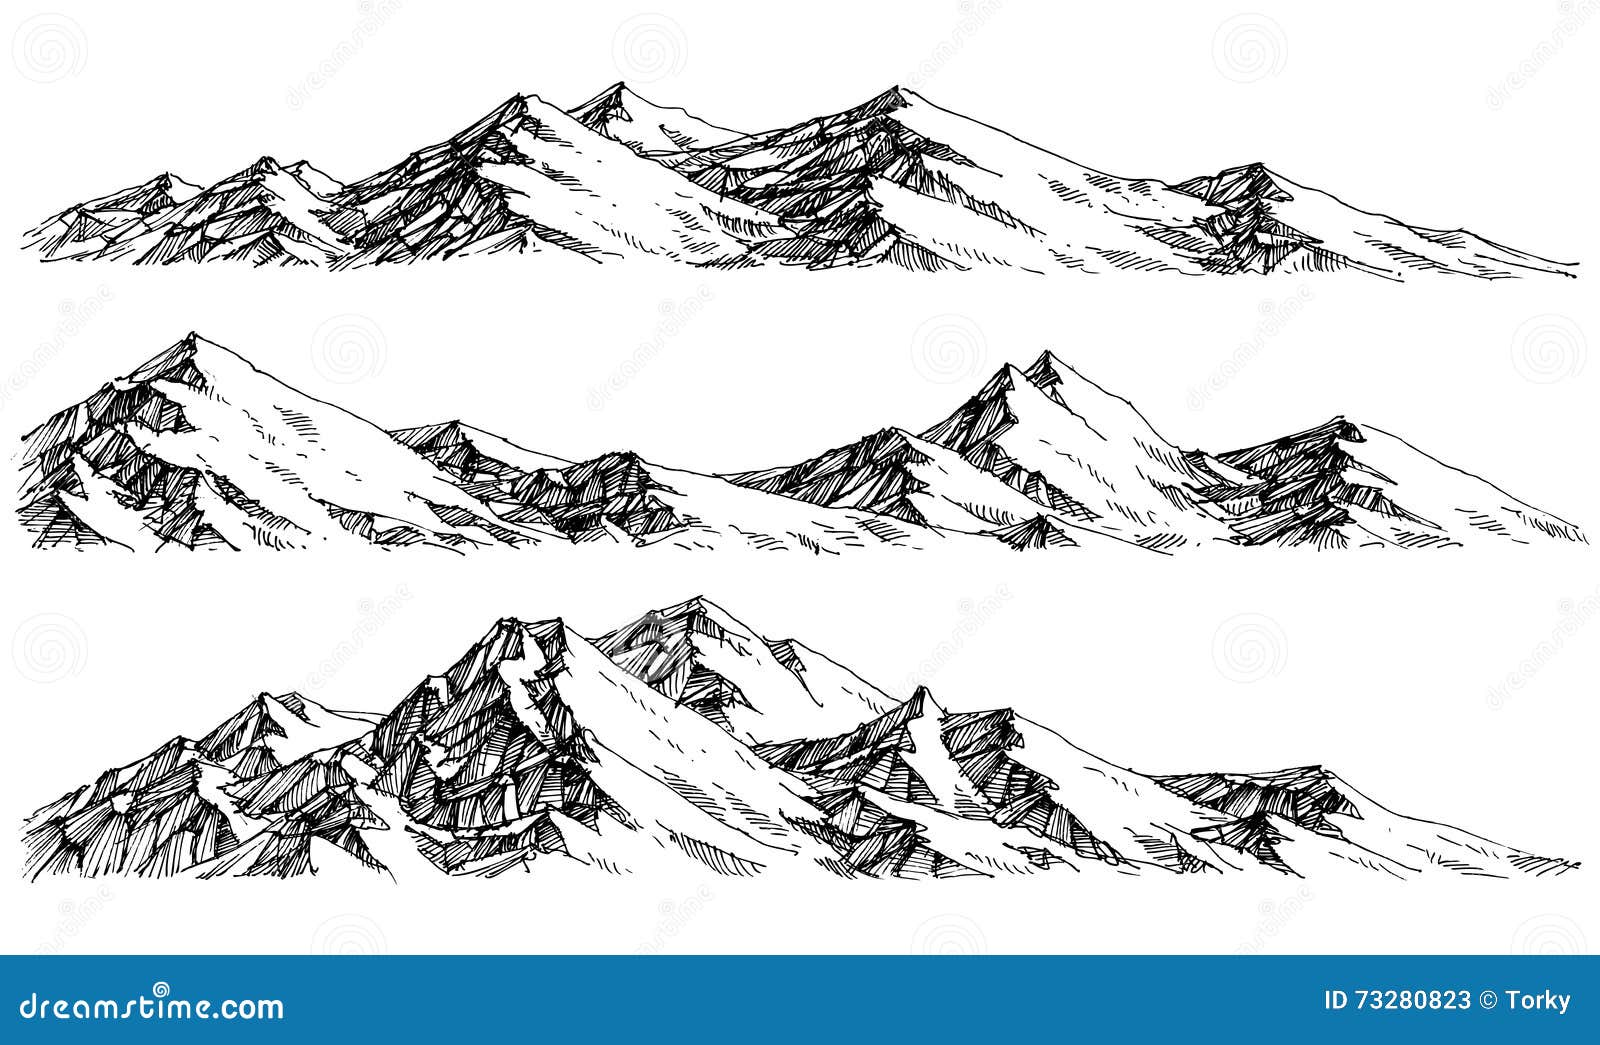 mountains ranges